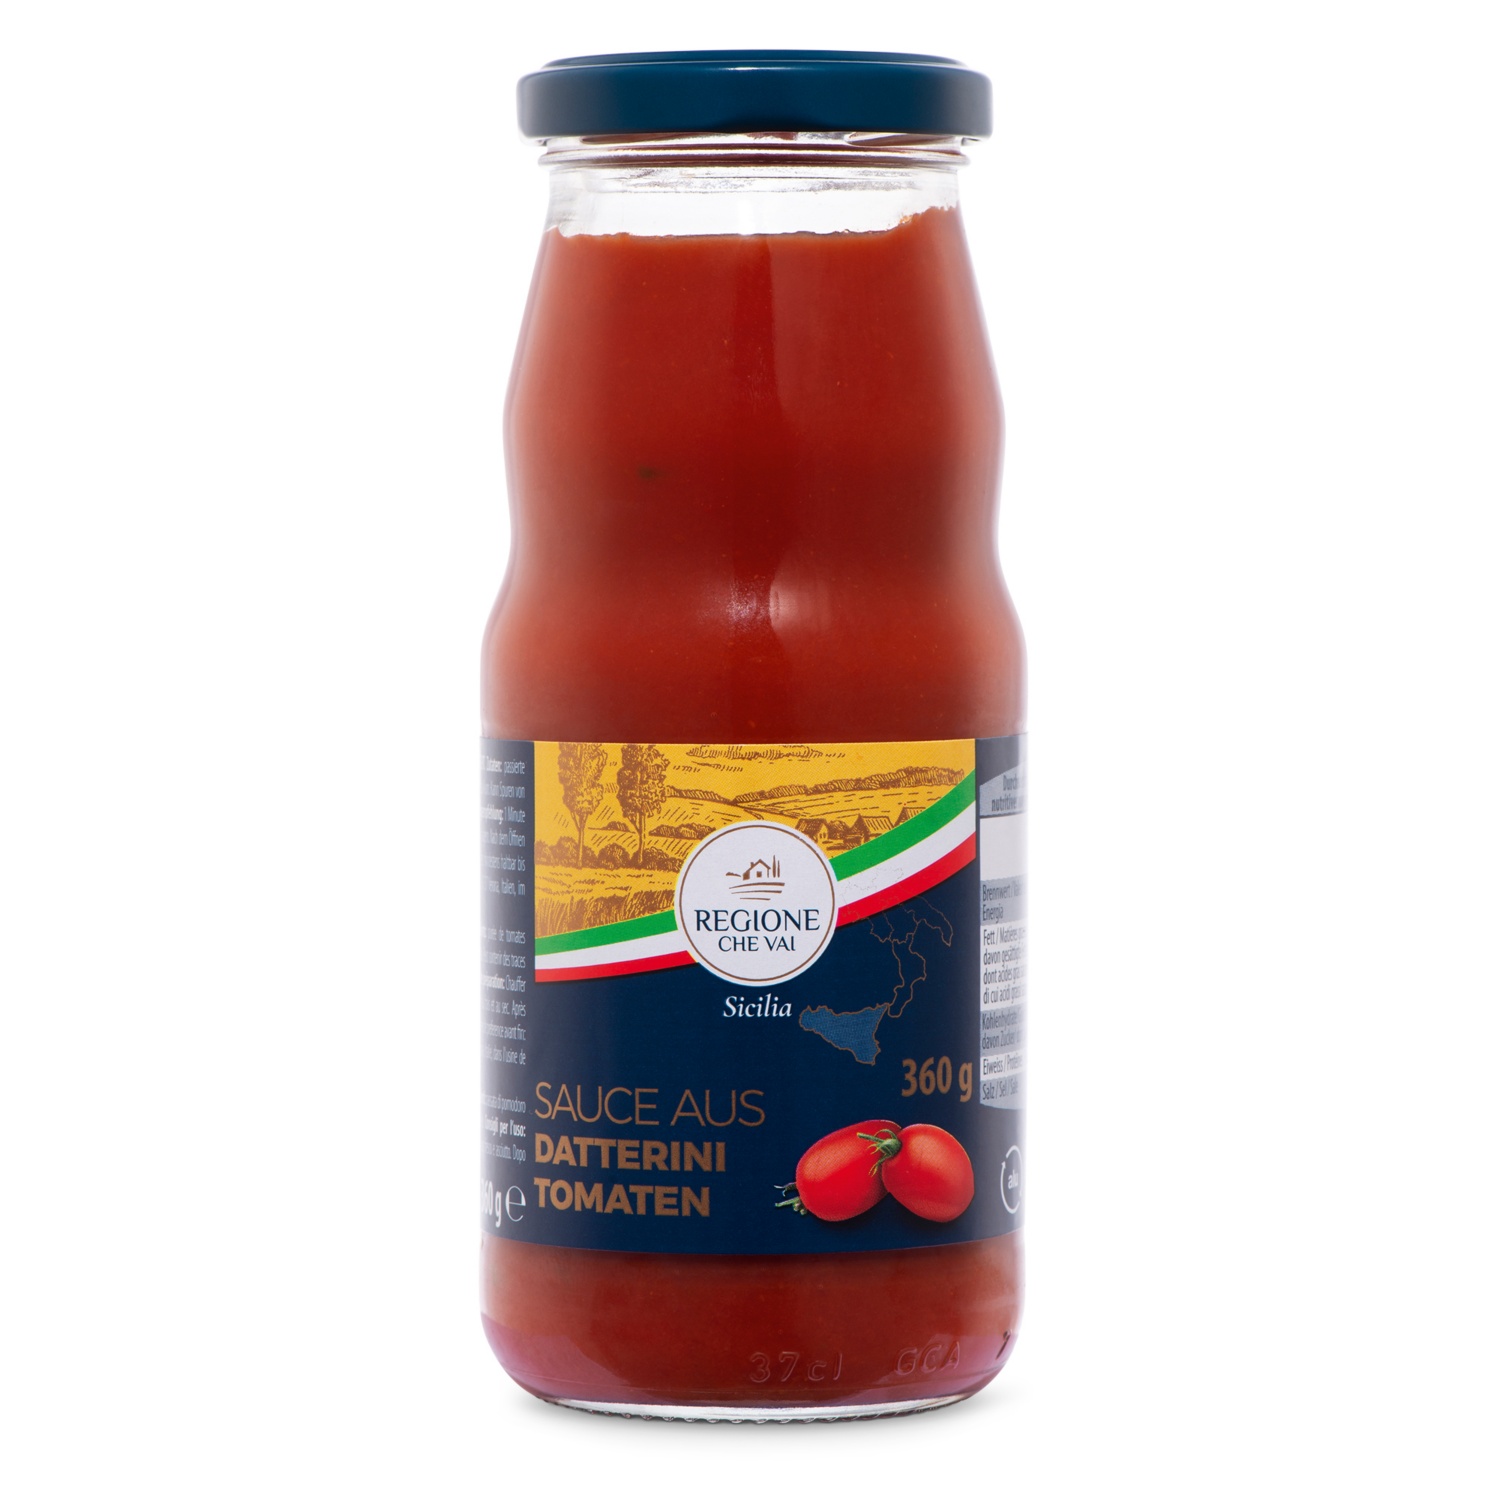 REGIONE CHE VAI Sauce tomate Datterini